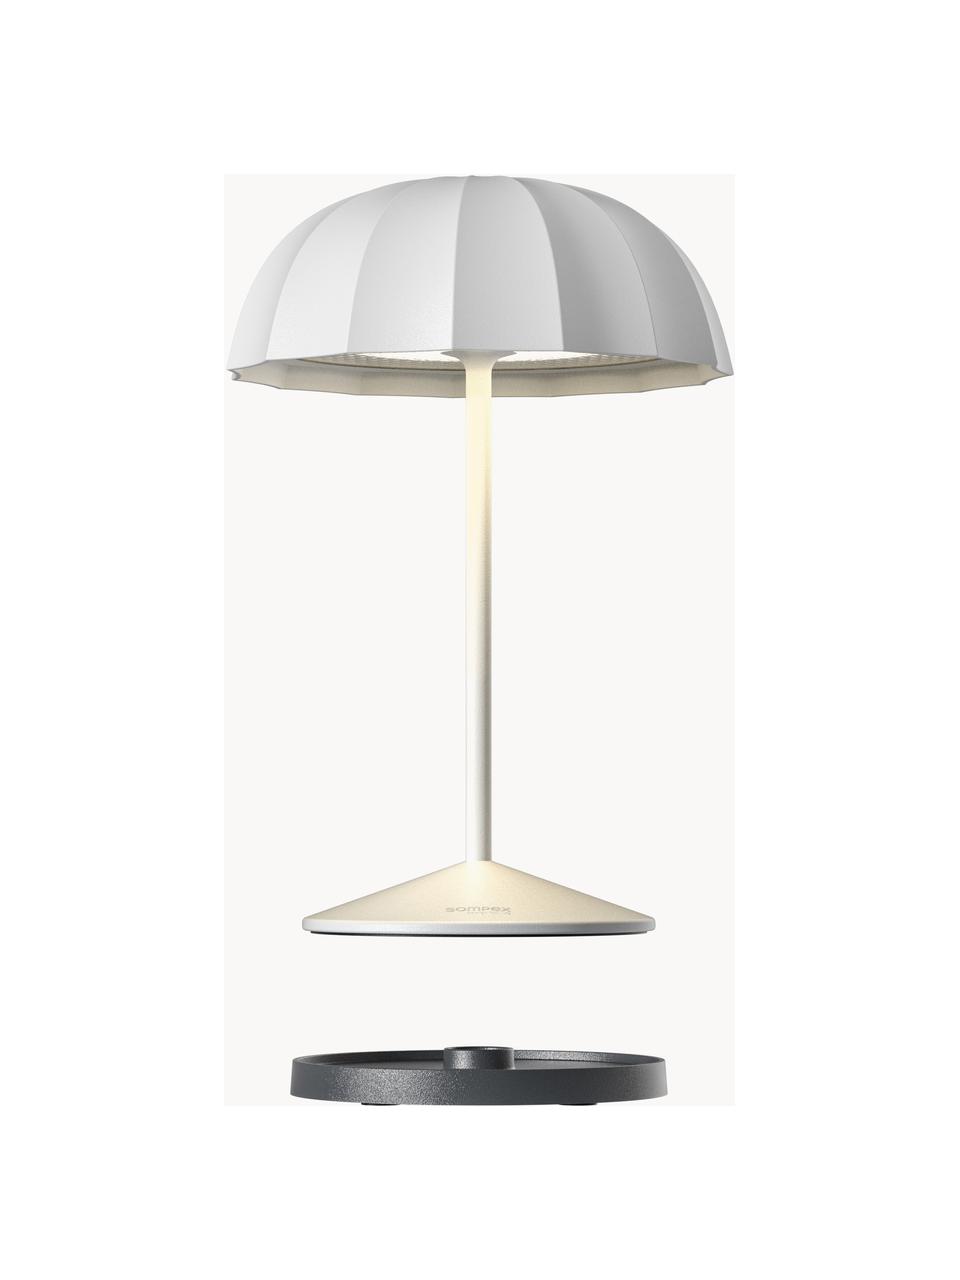 Lampada piccola da esterno portatile a LED con luce regolabile Ombrellino, Lampada: alluminio rivestito, Bianco, Ø 16 x Alt. 23 cm